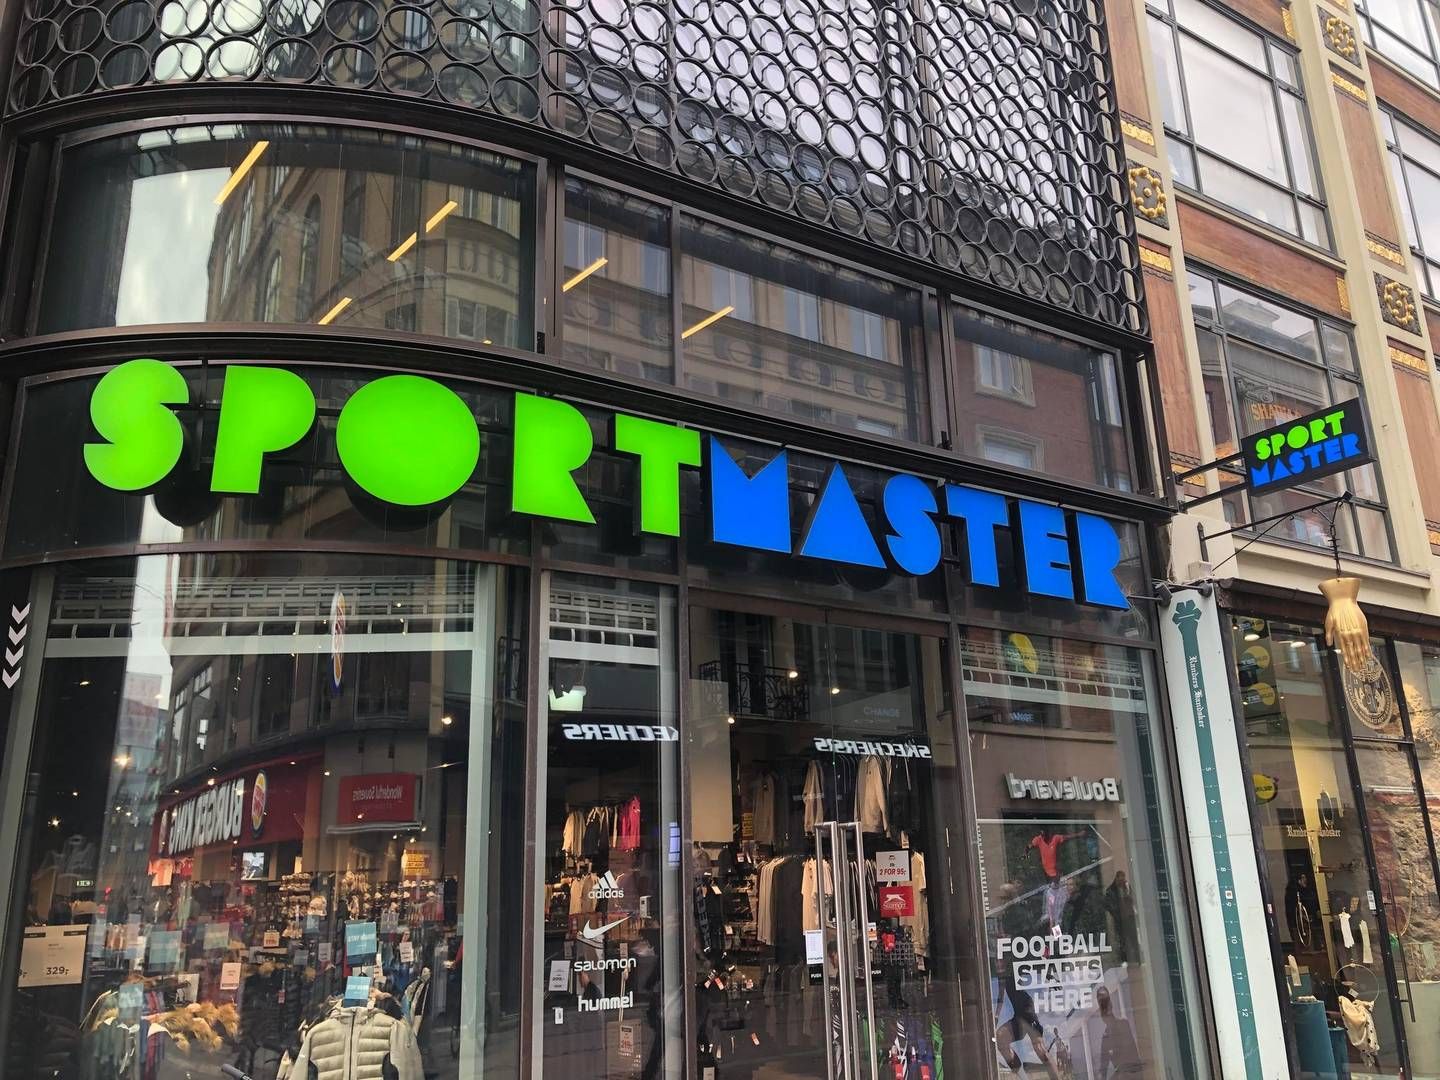 Det karakteristiske grønne og blå Sportmaster-logo vil efter planen over de kommende to år blive udskiftet til et blåt og rødt Sports World-logo. | Foto: Alexander Thorup/detailwatch